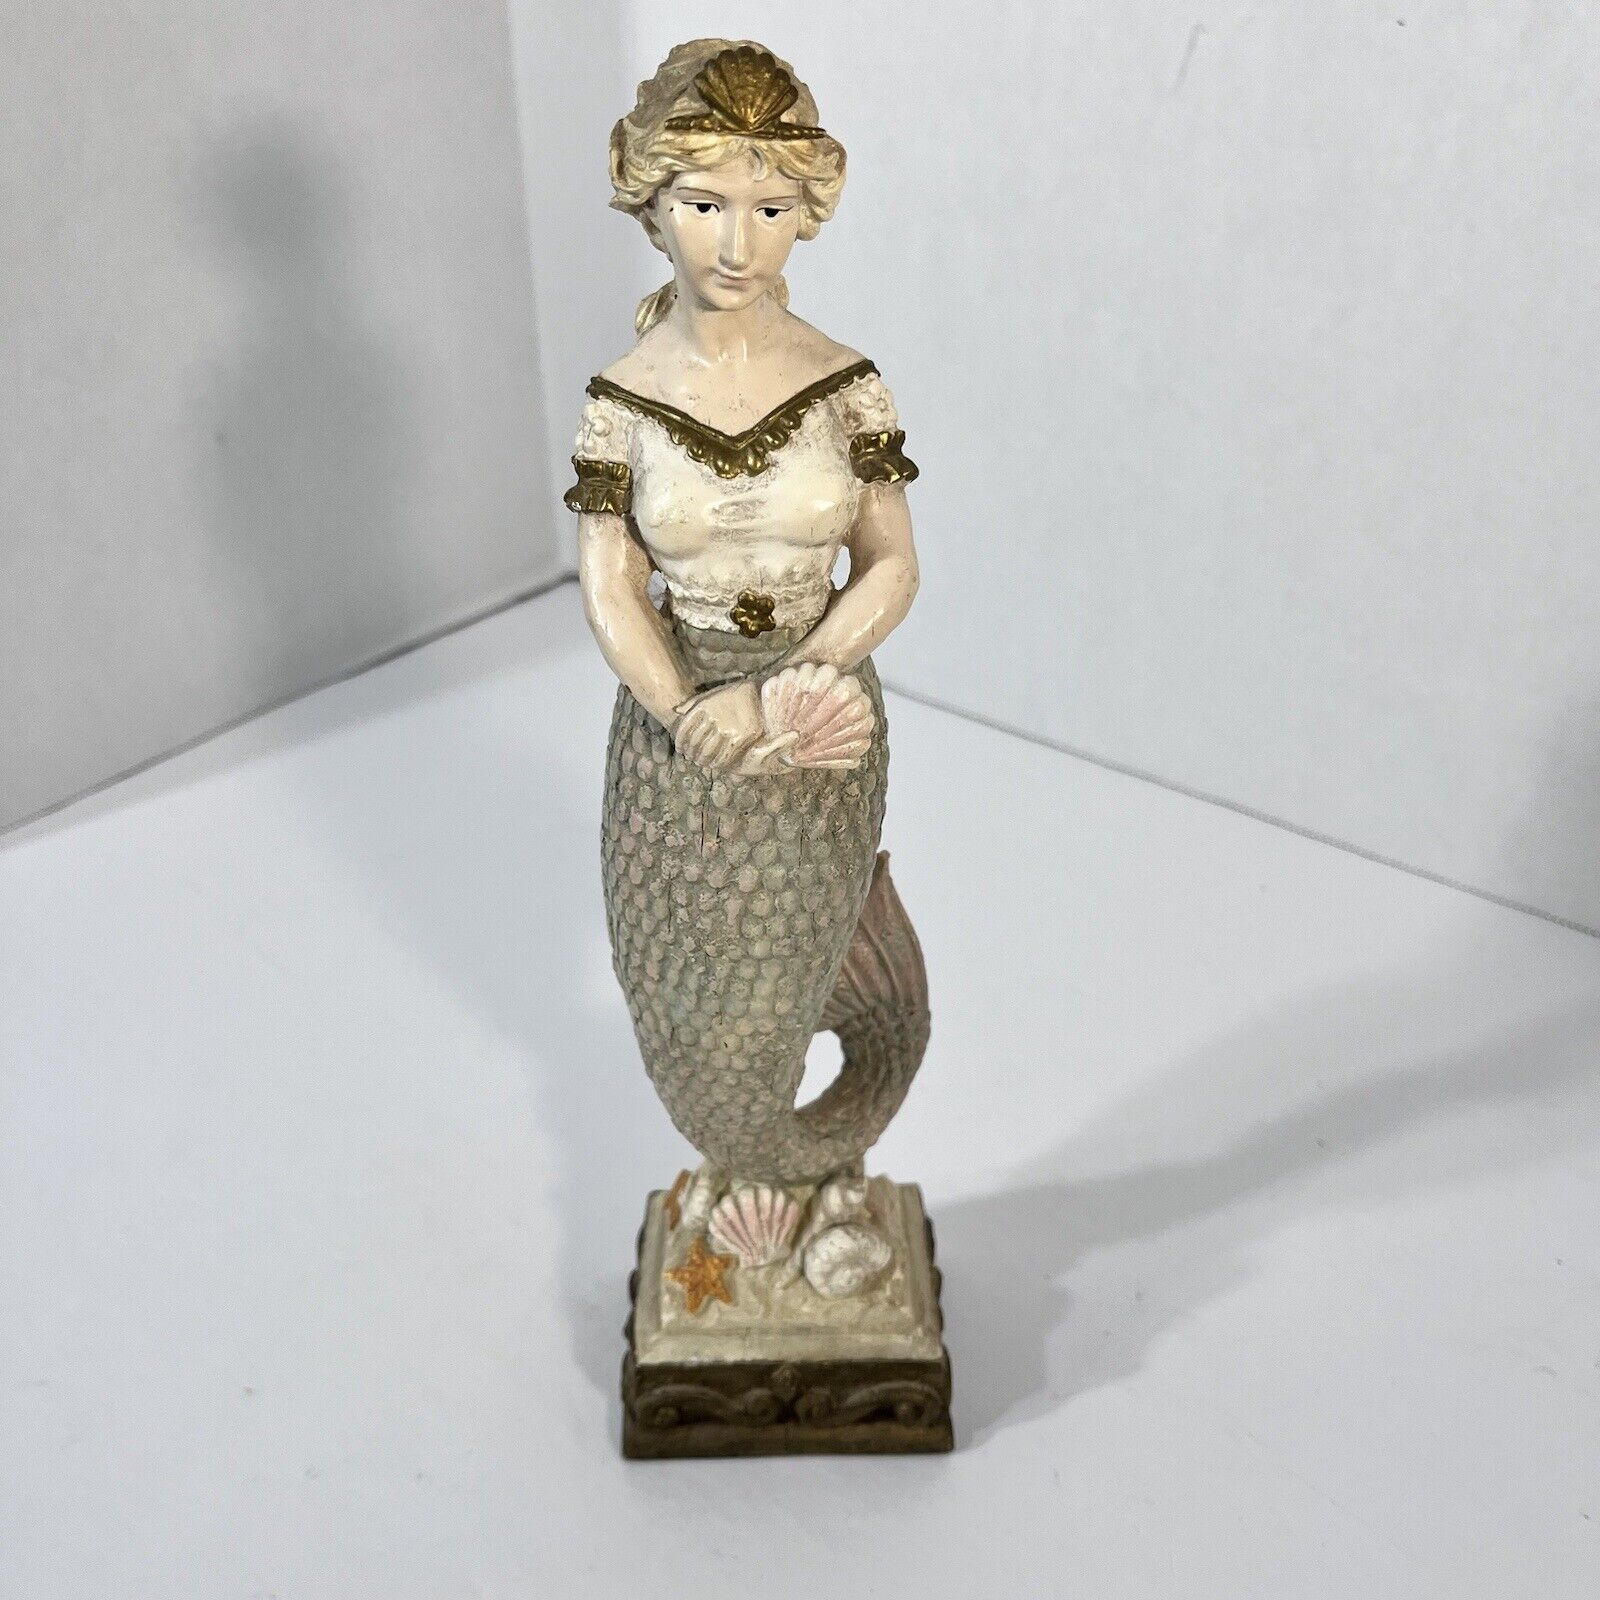 Unique Vintage Mermaid 10 Inch Figurine, Elegant Design